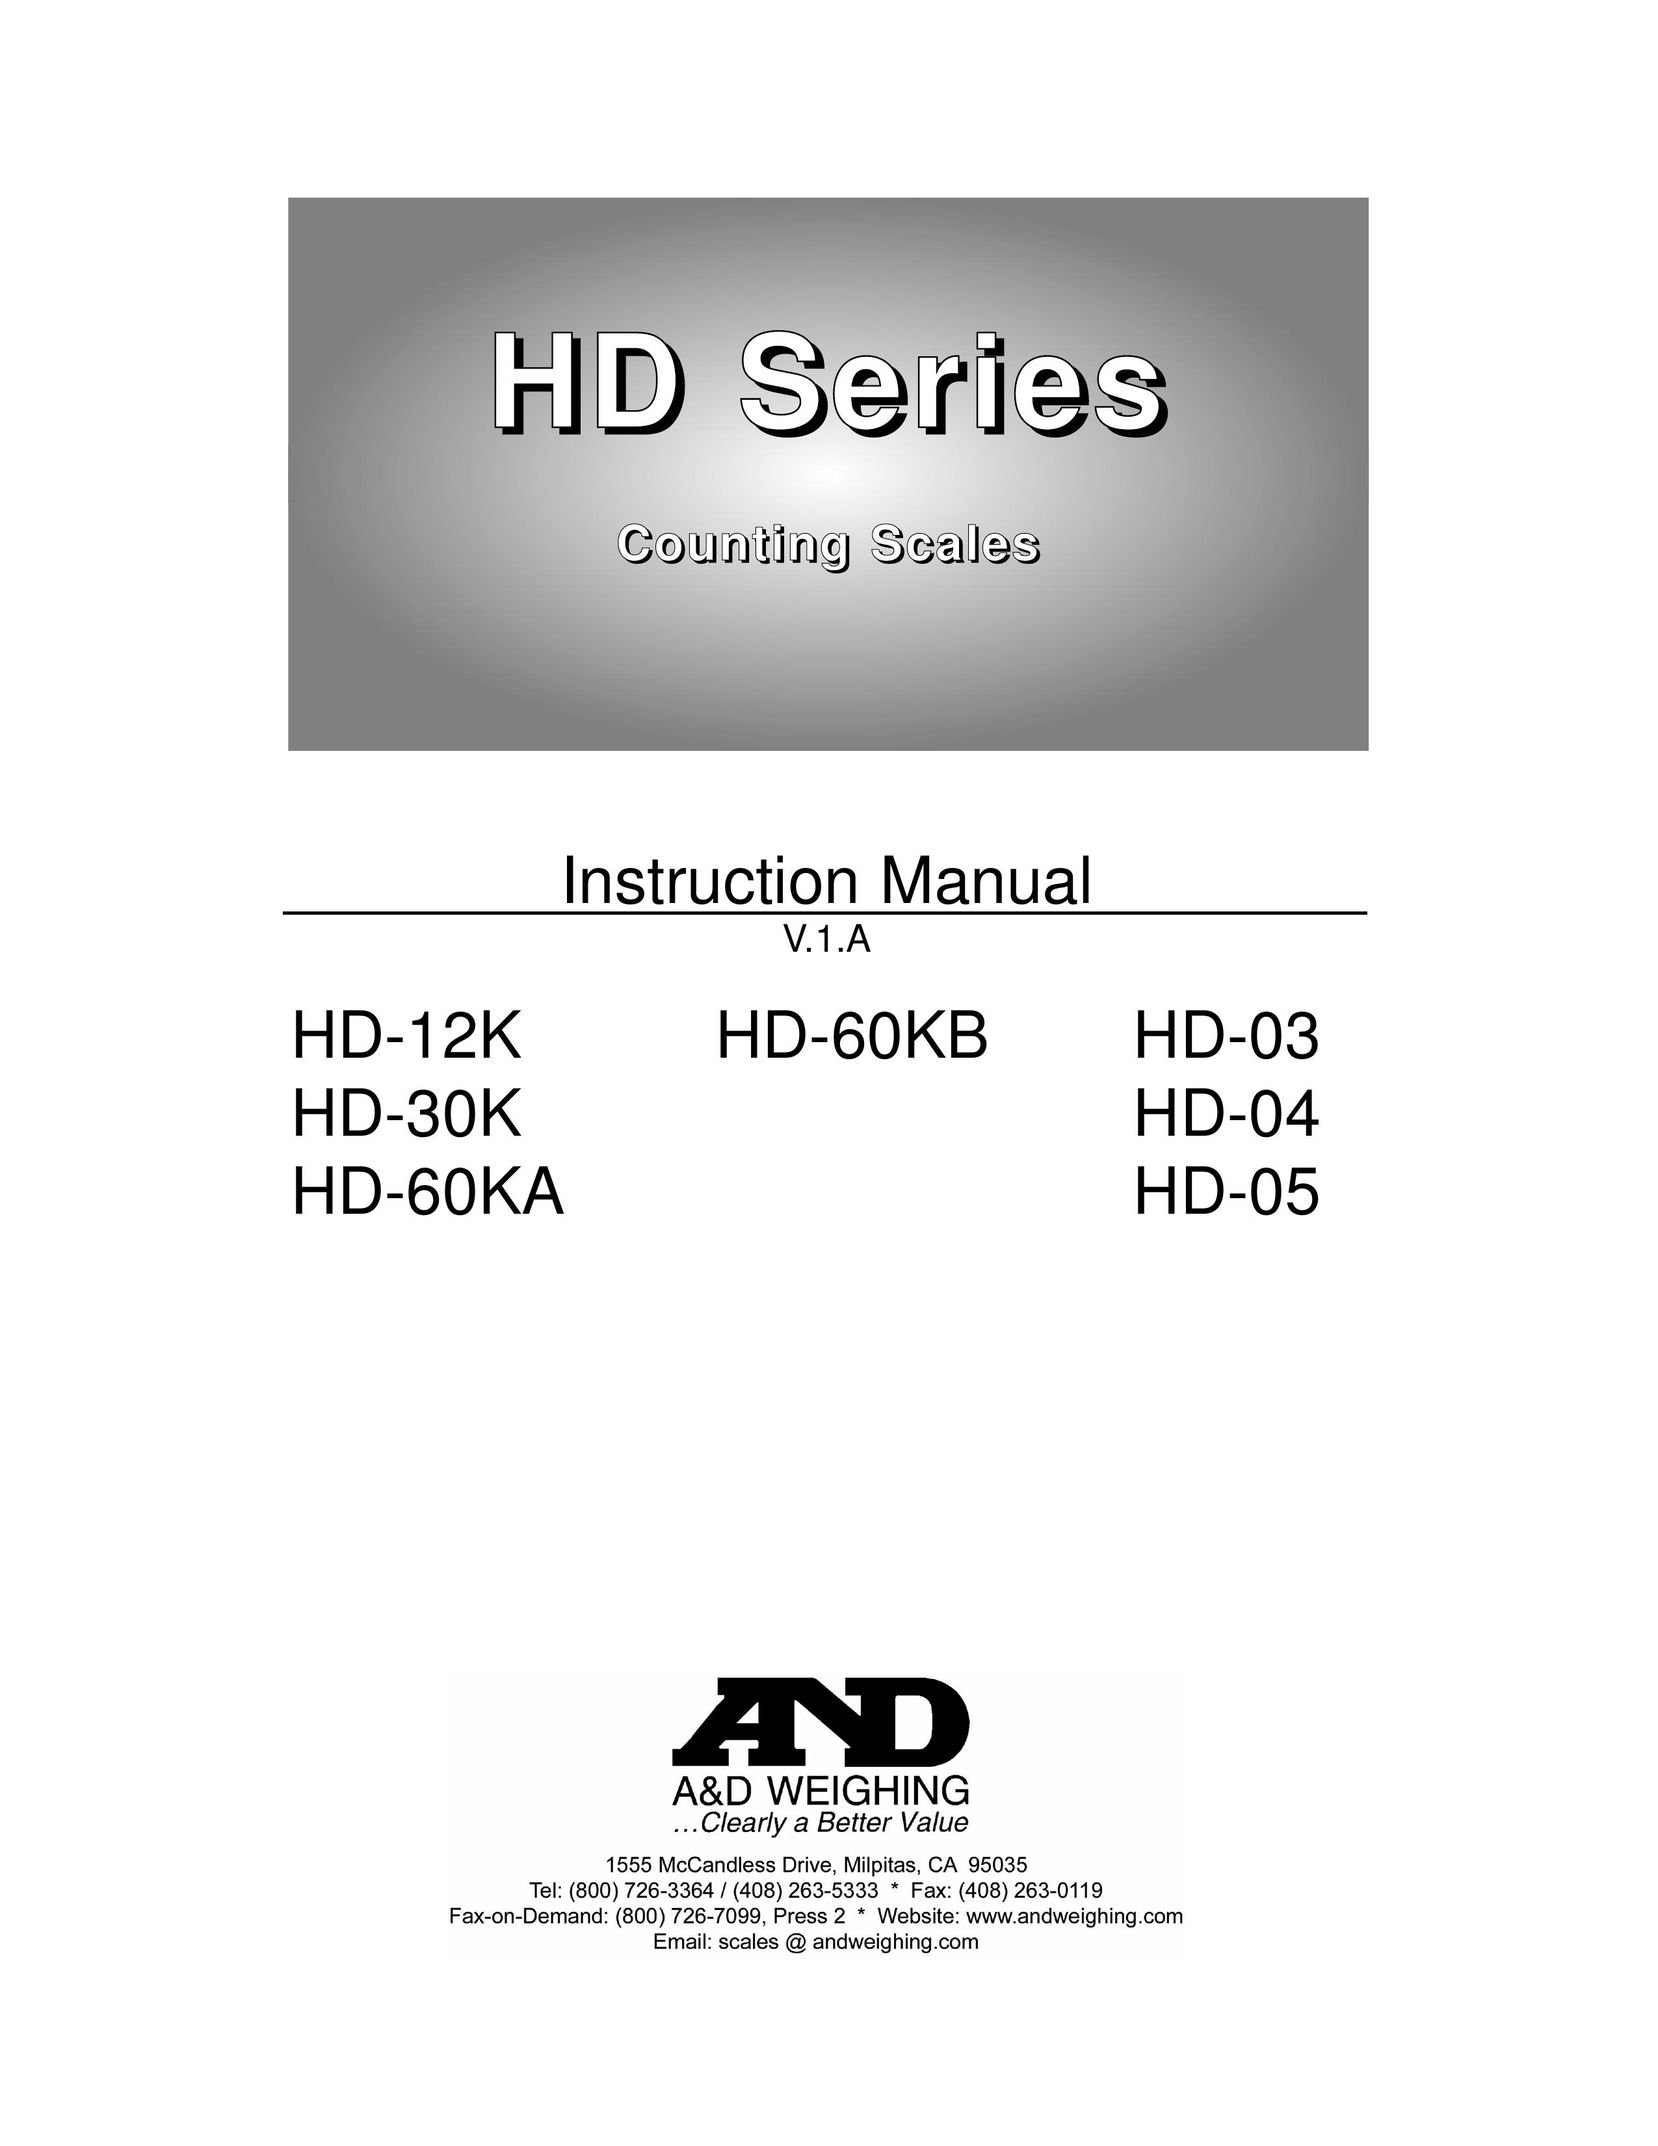 A&D HD-04 Building Set User Manual